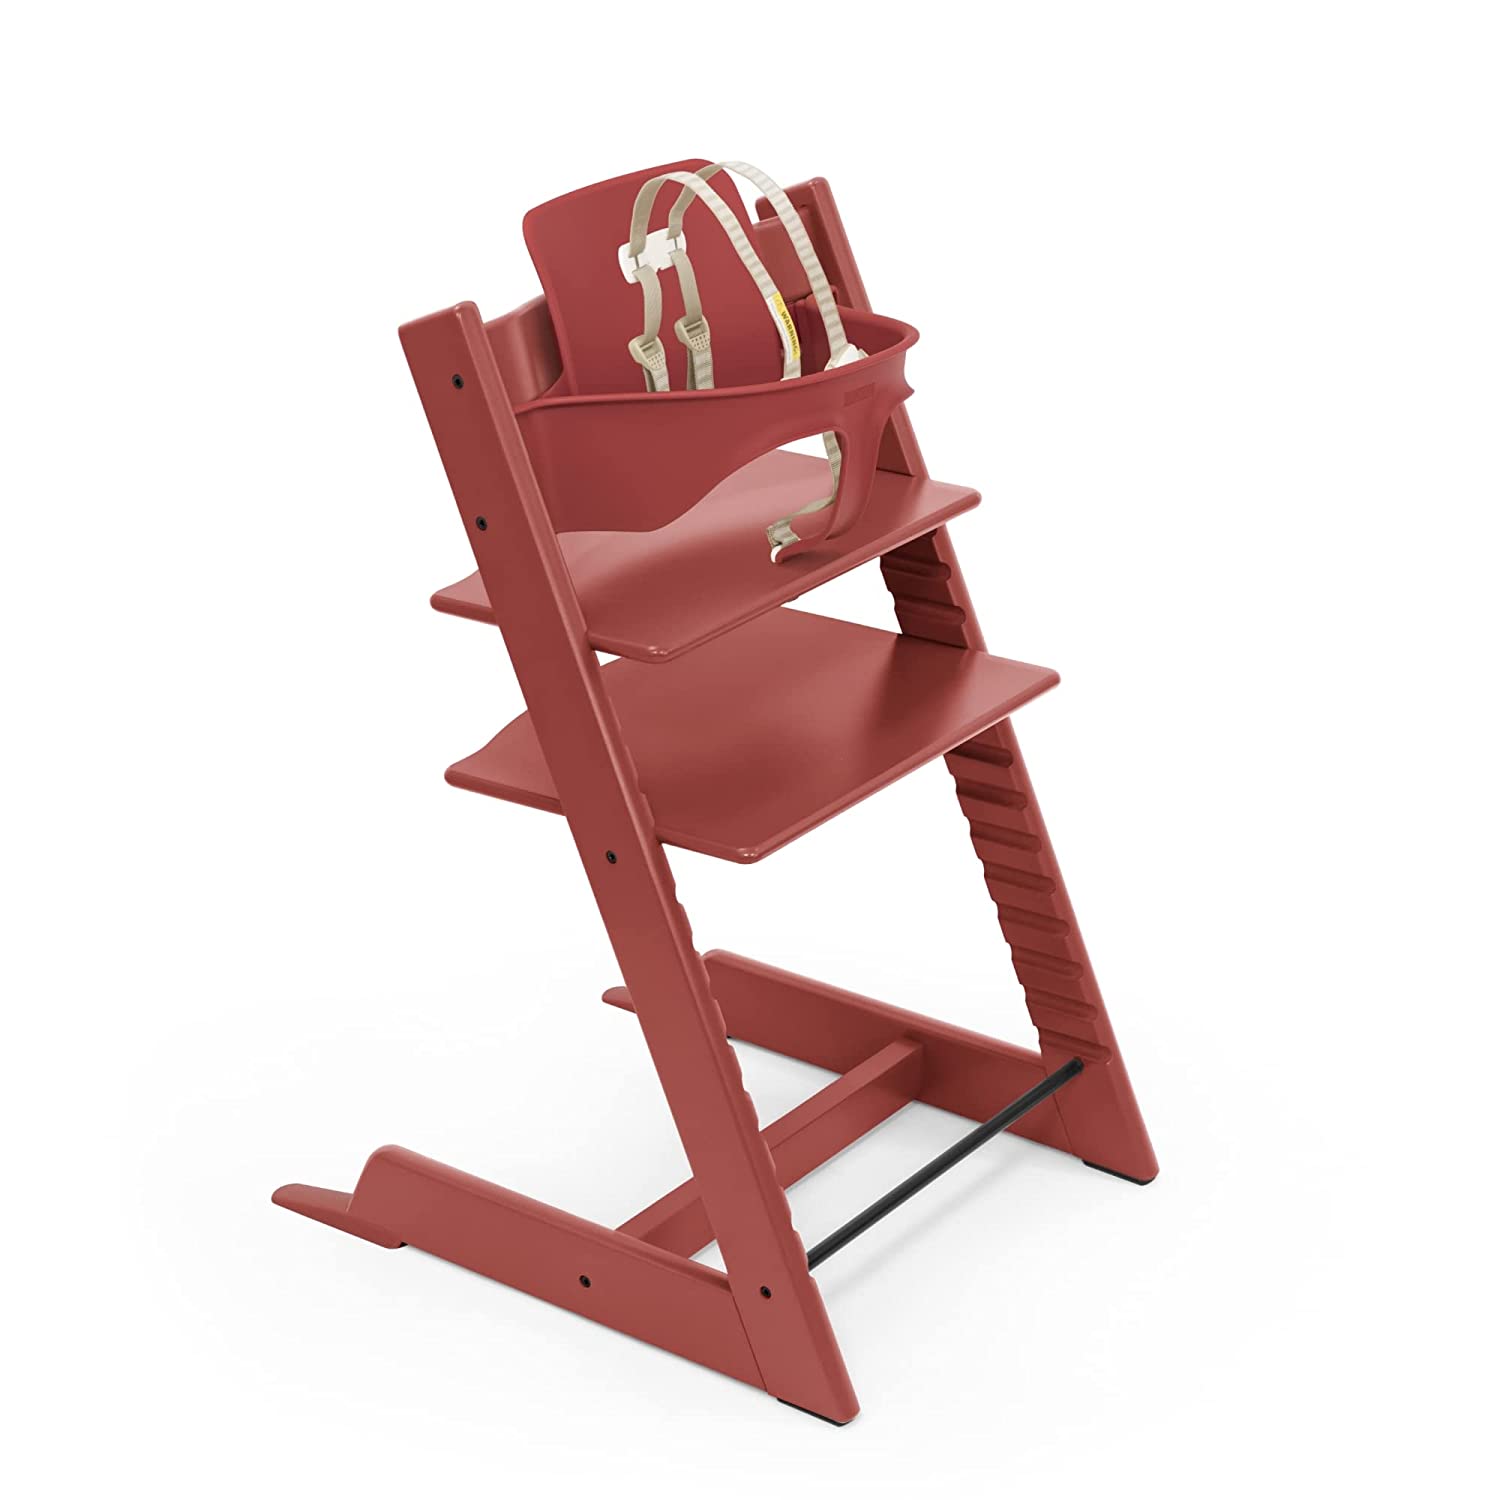 Детский стульчик-трансформер Stokke Tripp Trapp, красный